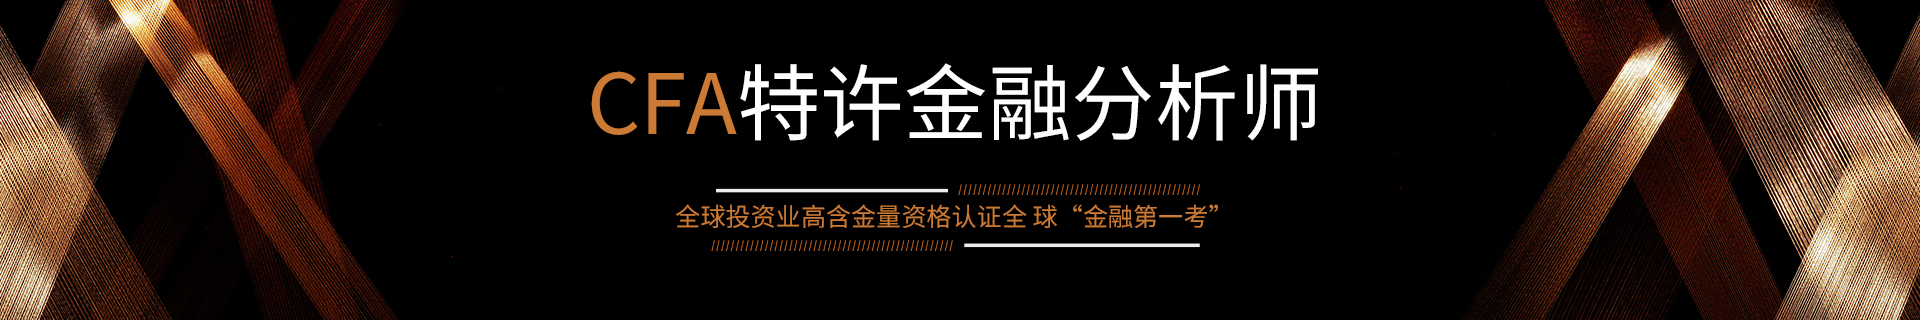 上海虹口区金程教育机构